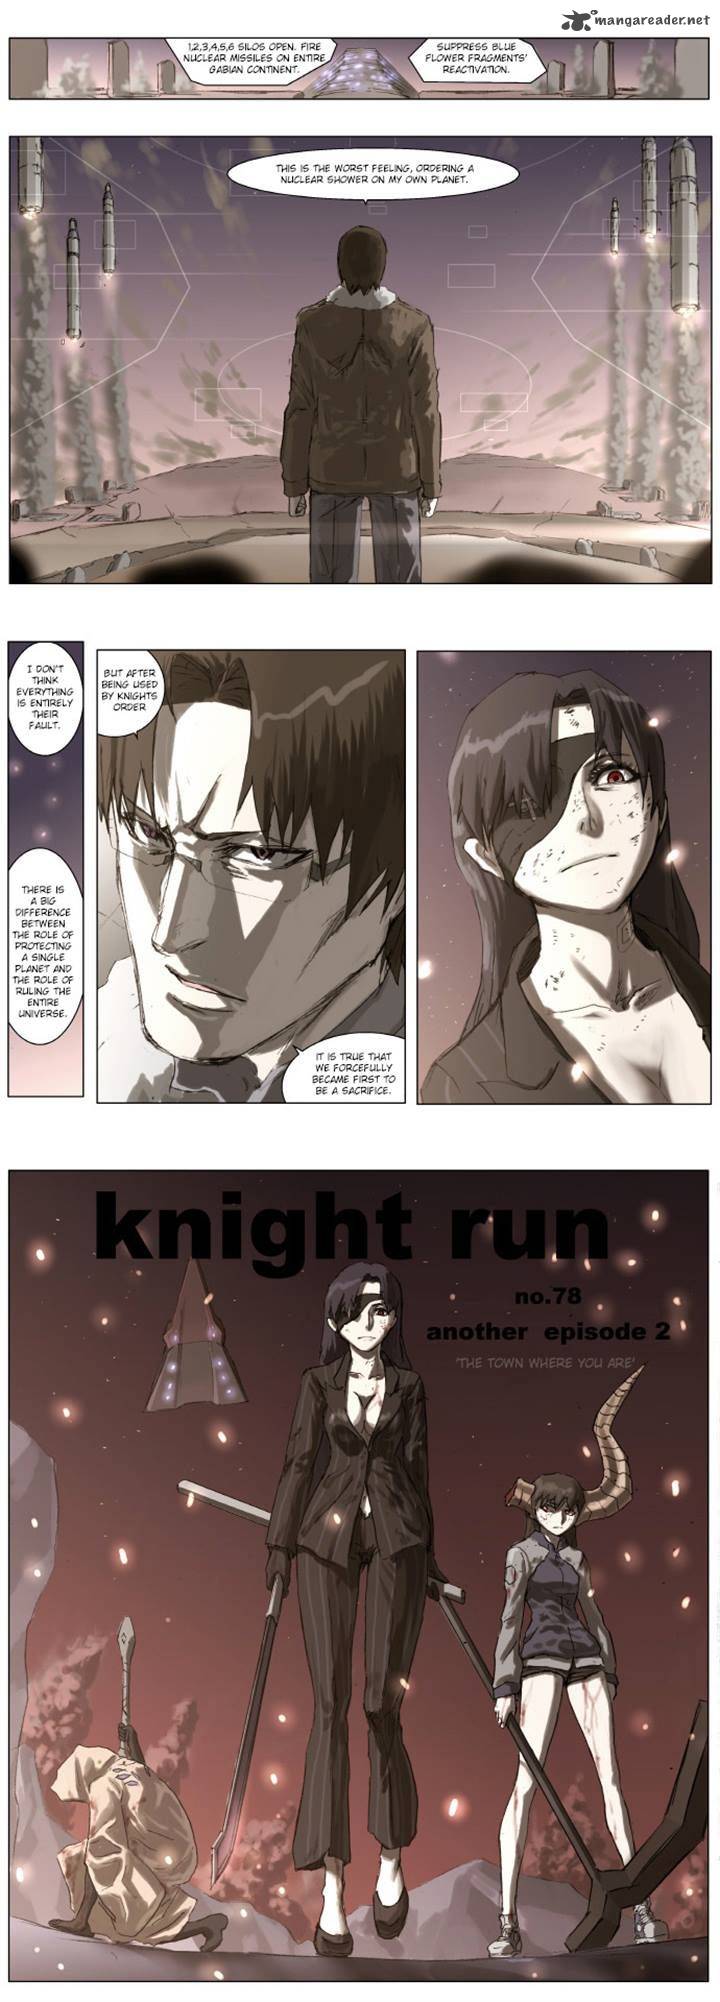 Knight Run 78 17